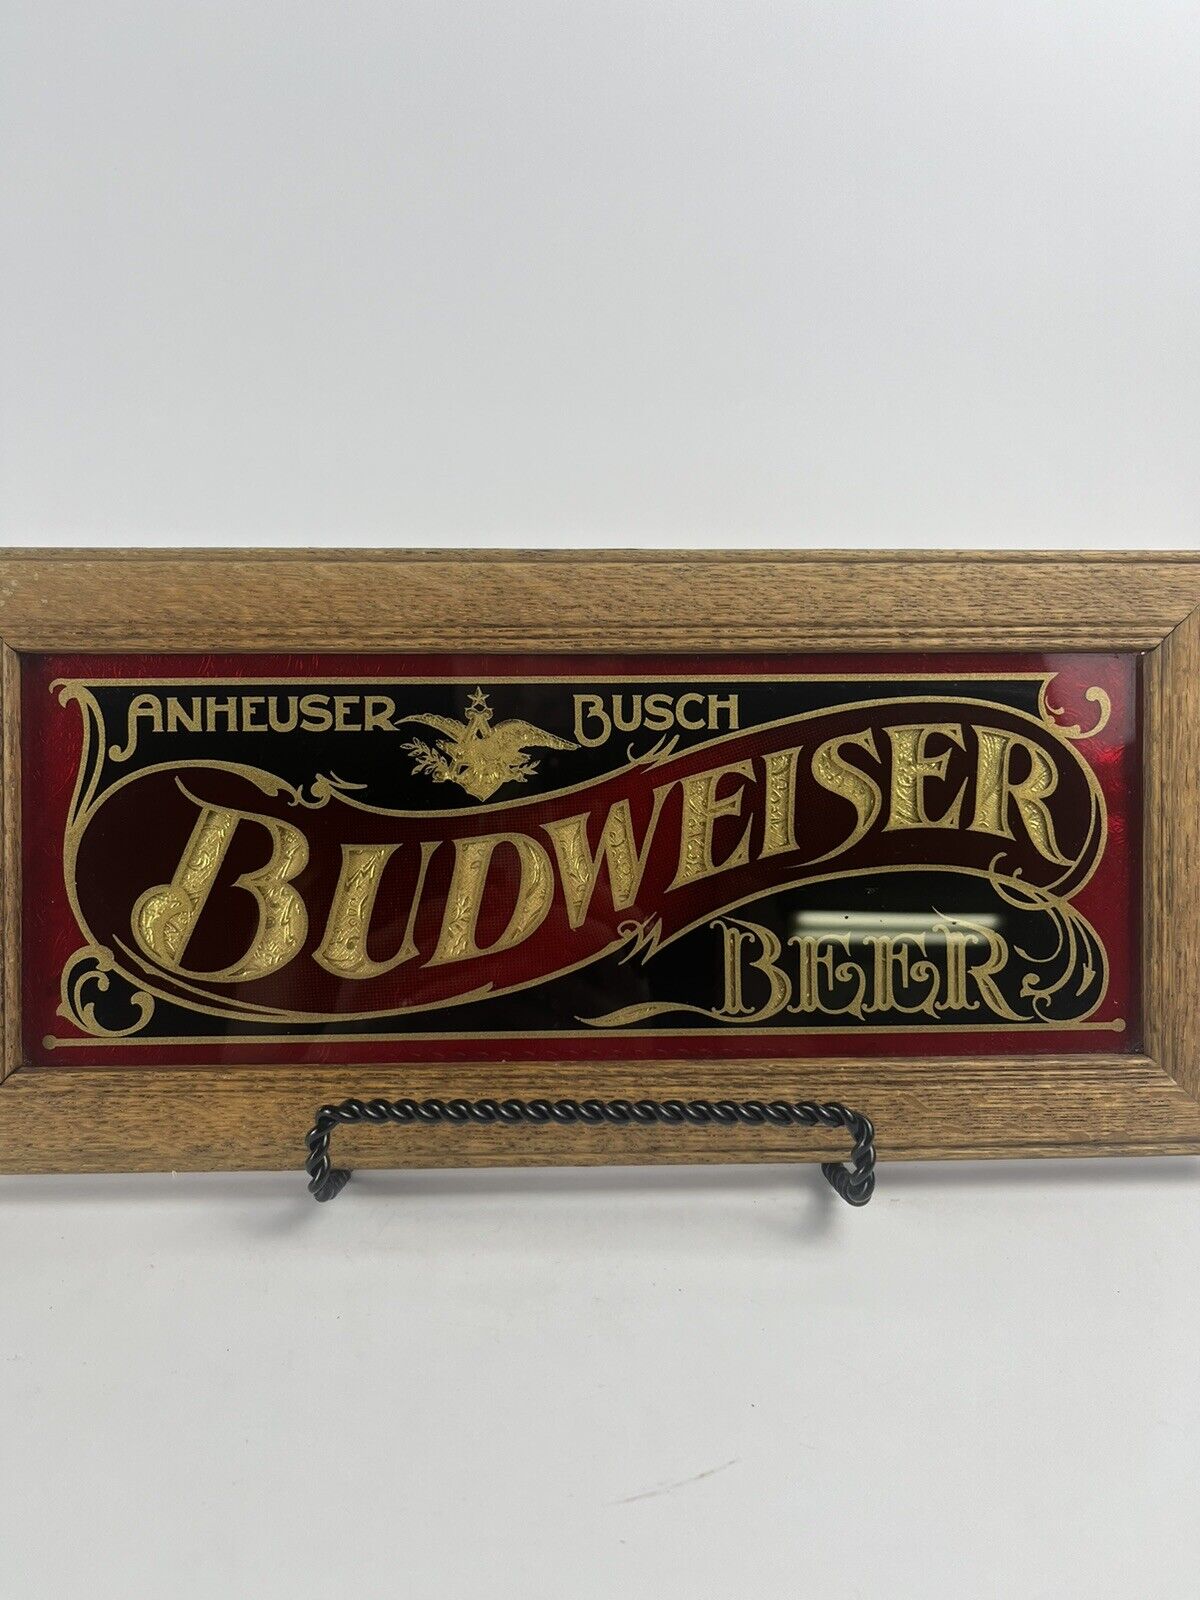 Vtg 1979 Anheuser Busch Budweiser Beer HENSLEY & CO Glass Sign Wood Frame